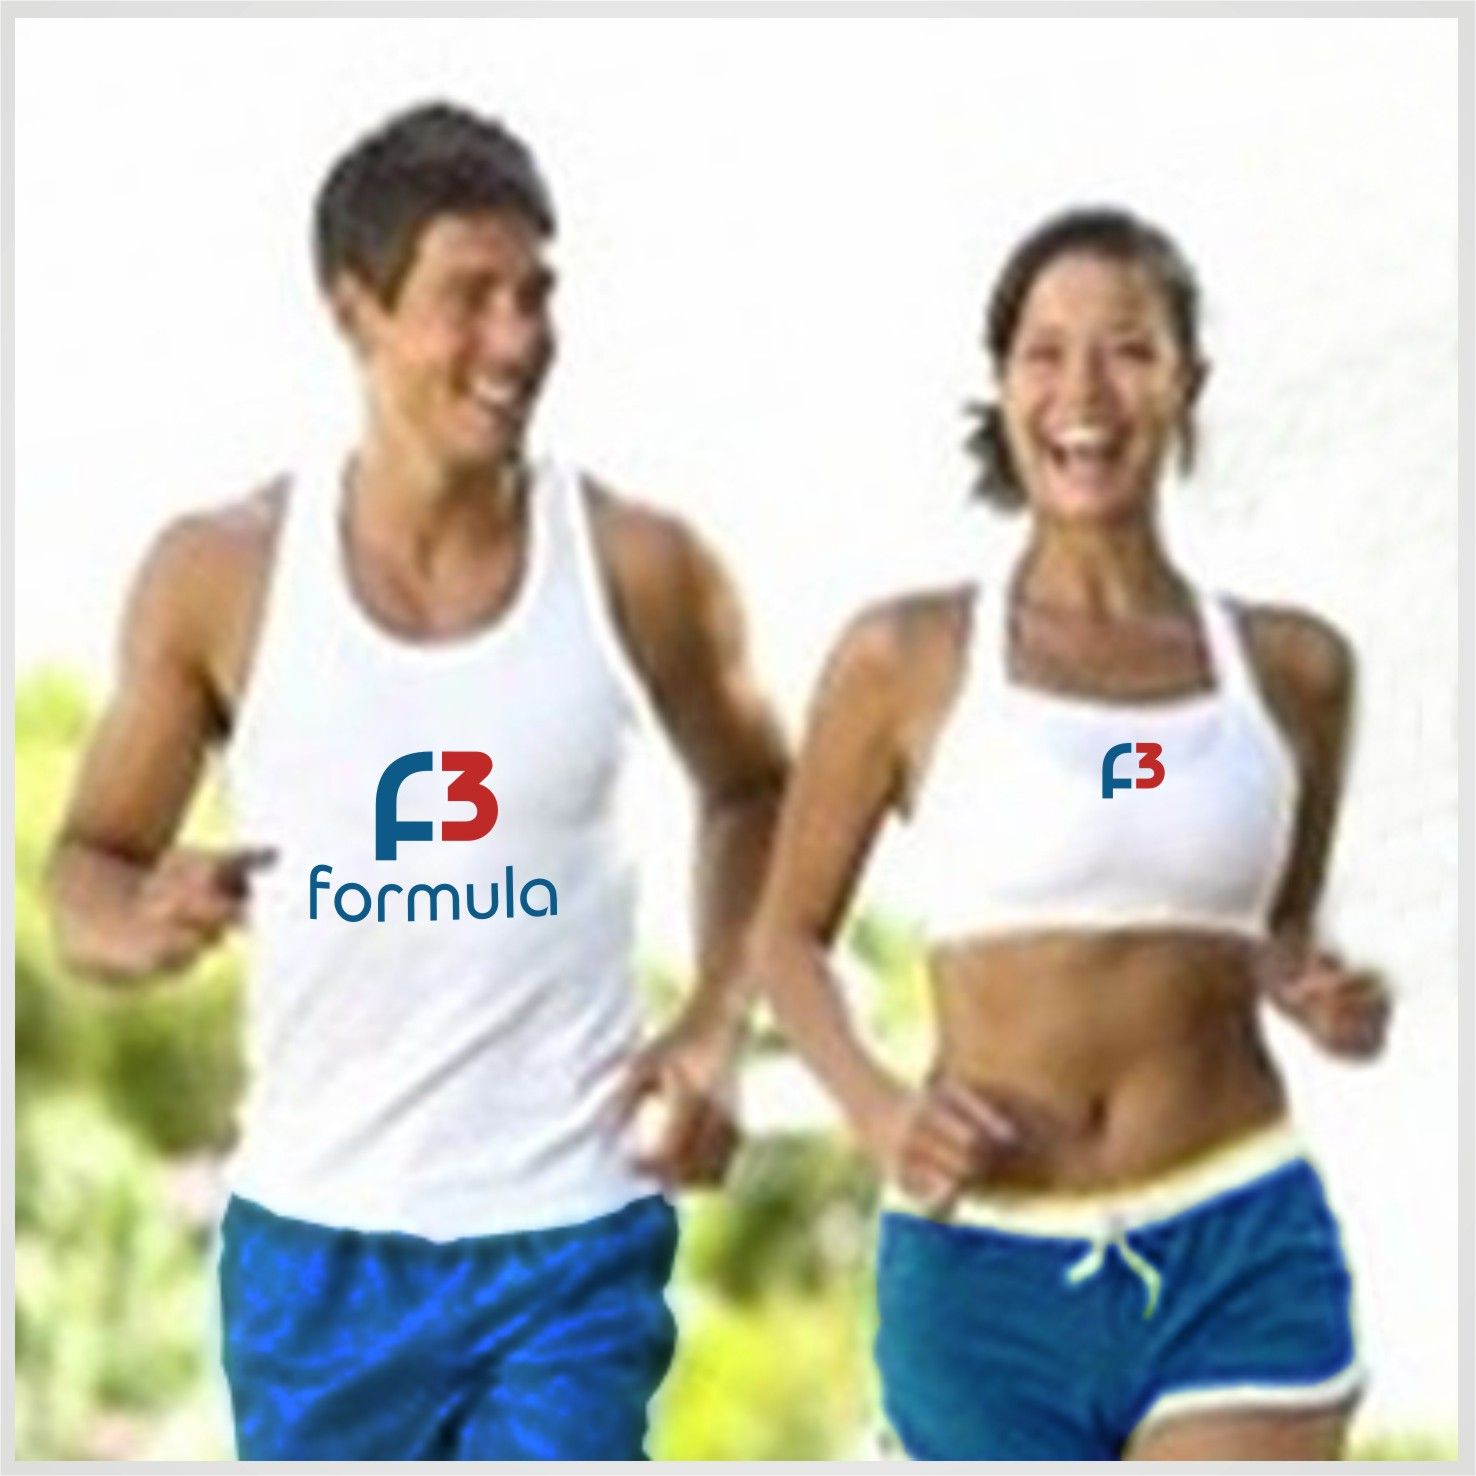 Лого и фирменный стиль для F3 formula - дизайнер Ryaha